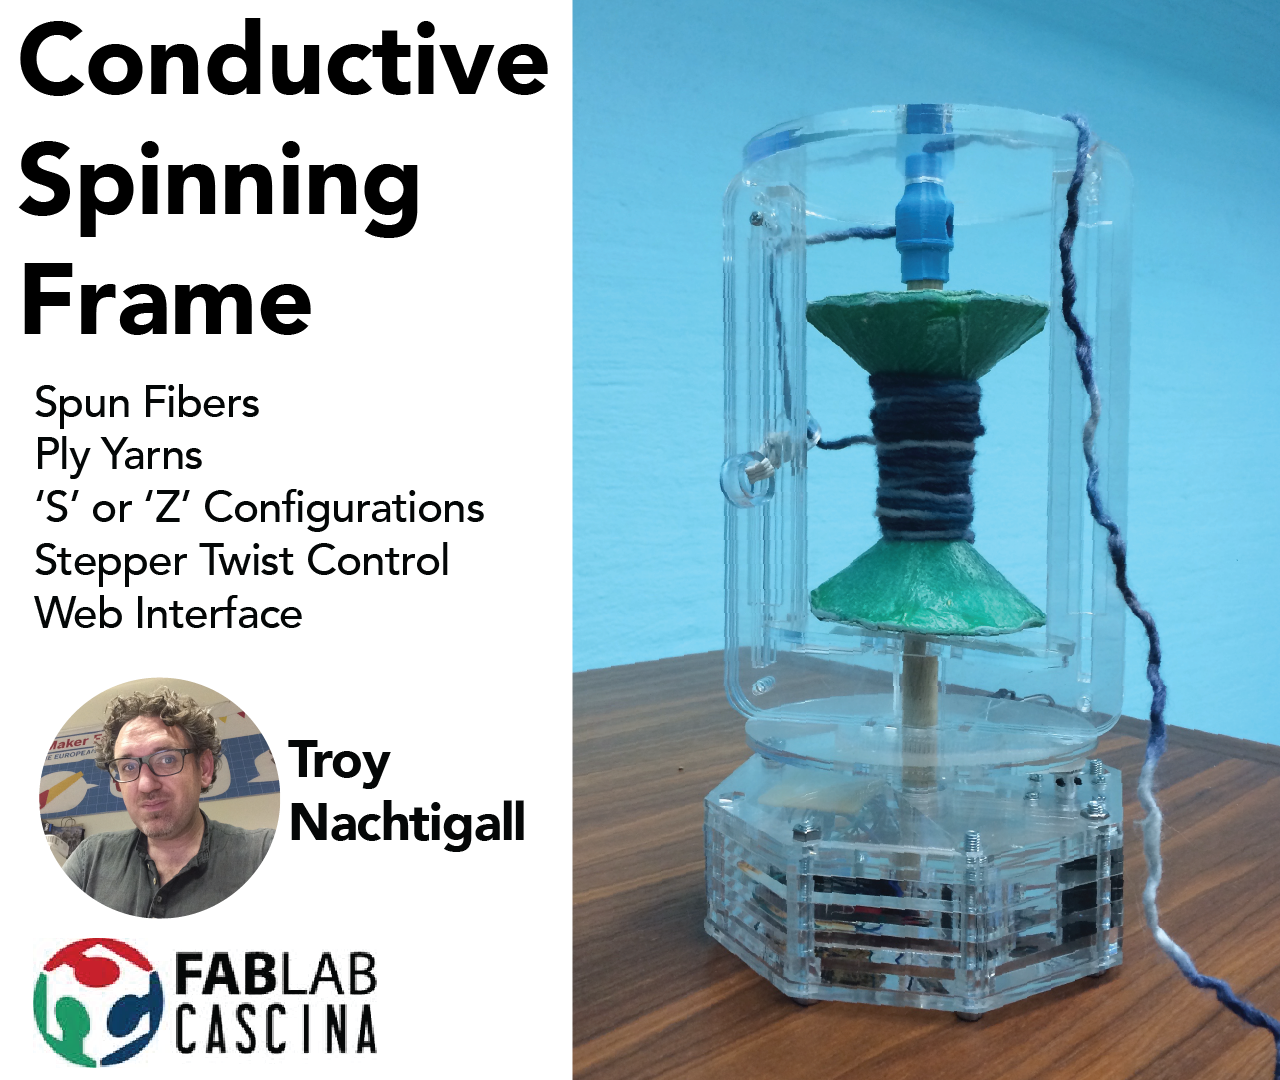 Condutive Spinning Frame Final slide.